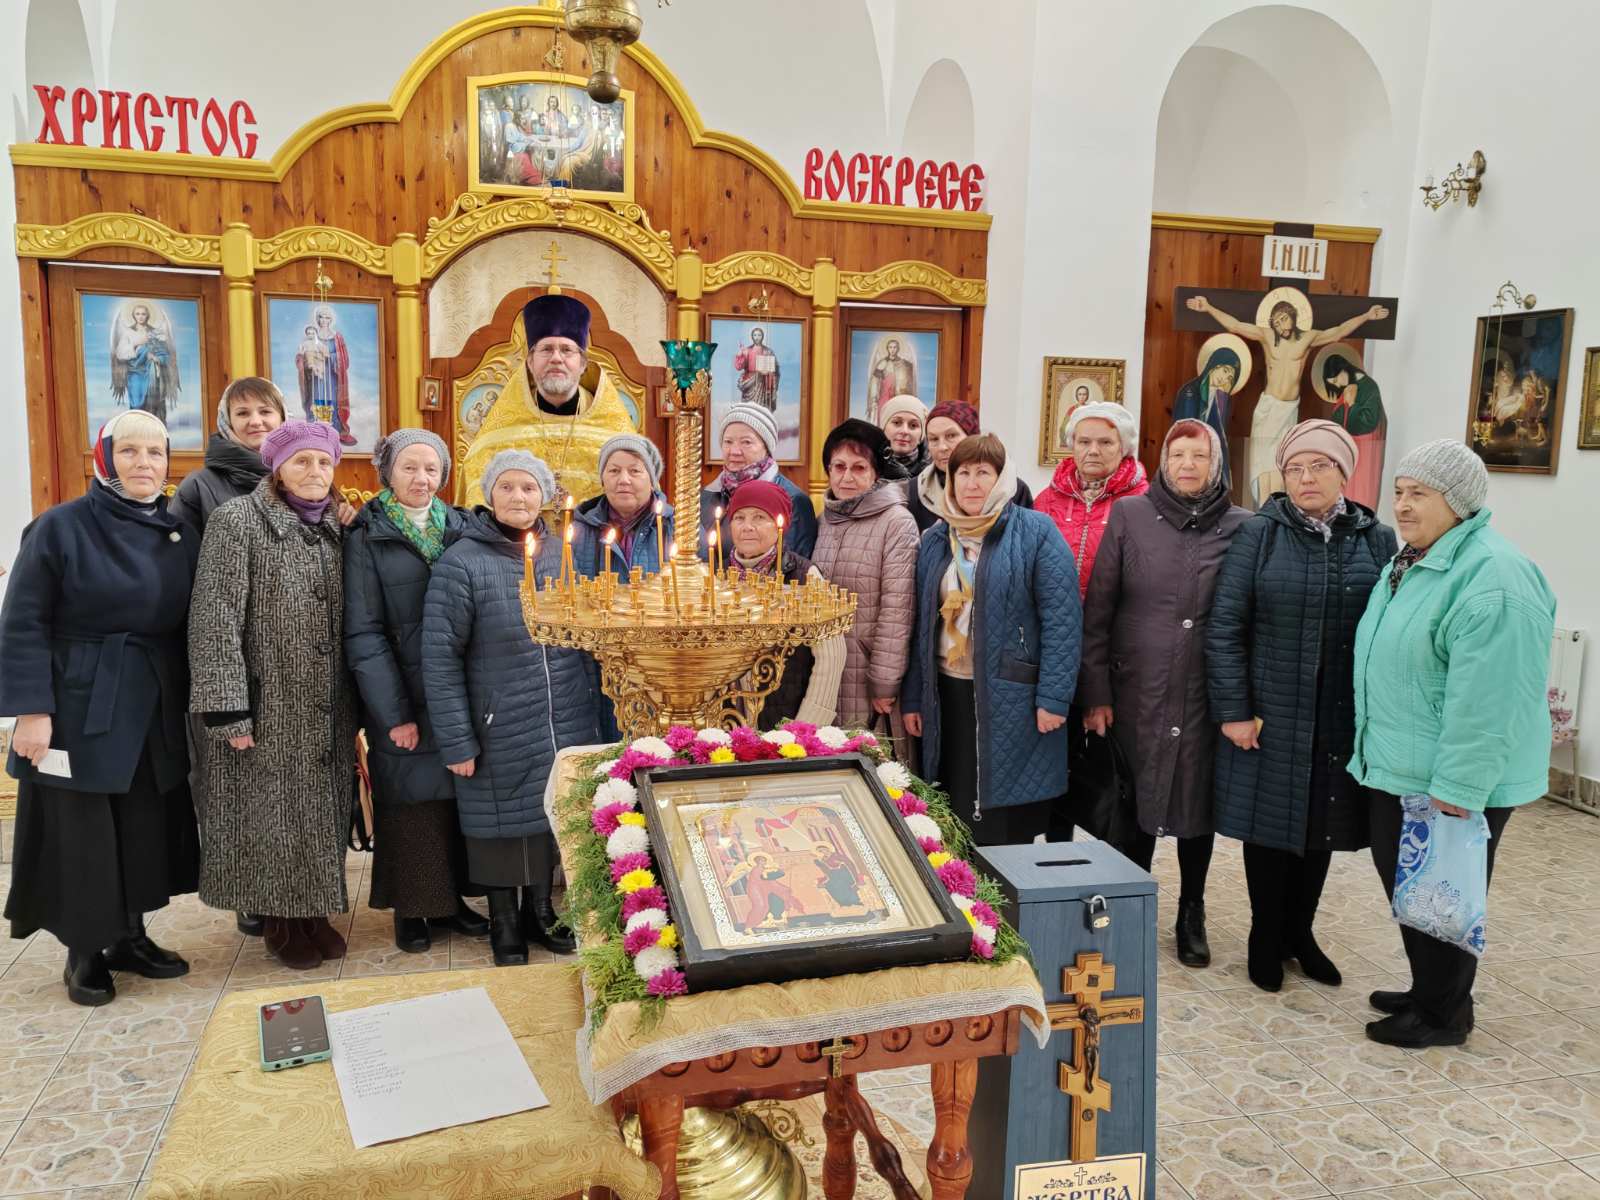 Протоиерей Сергий Андреев провел обзорную экскурсию по Приходу с участниками клуба «Православие — пусть к сердцу»